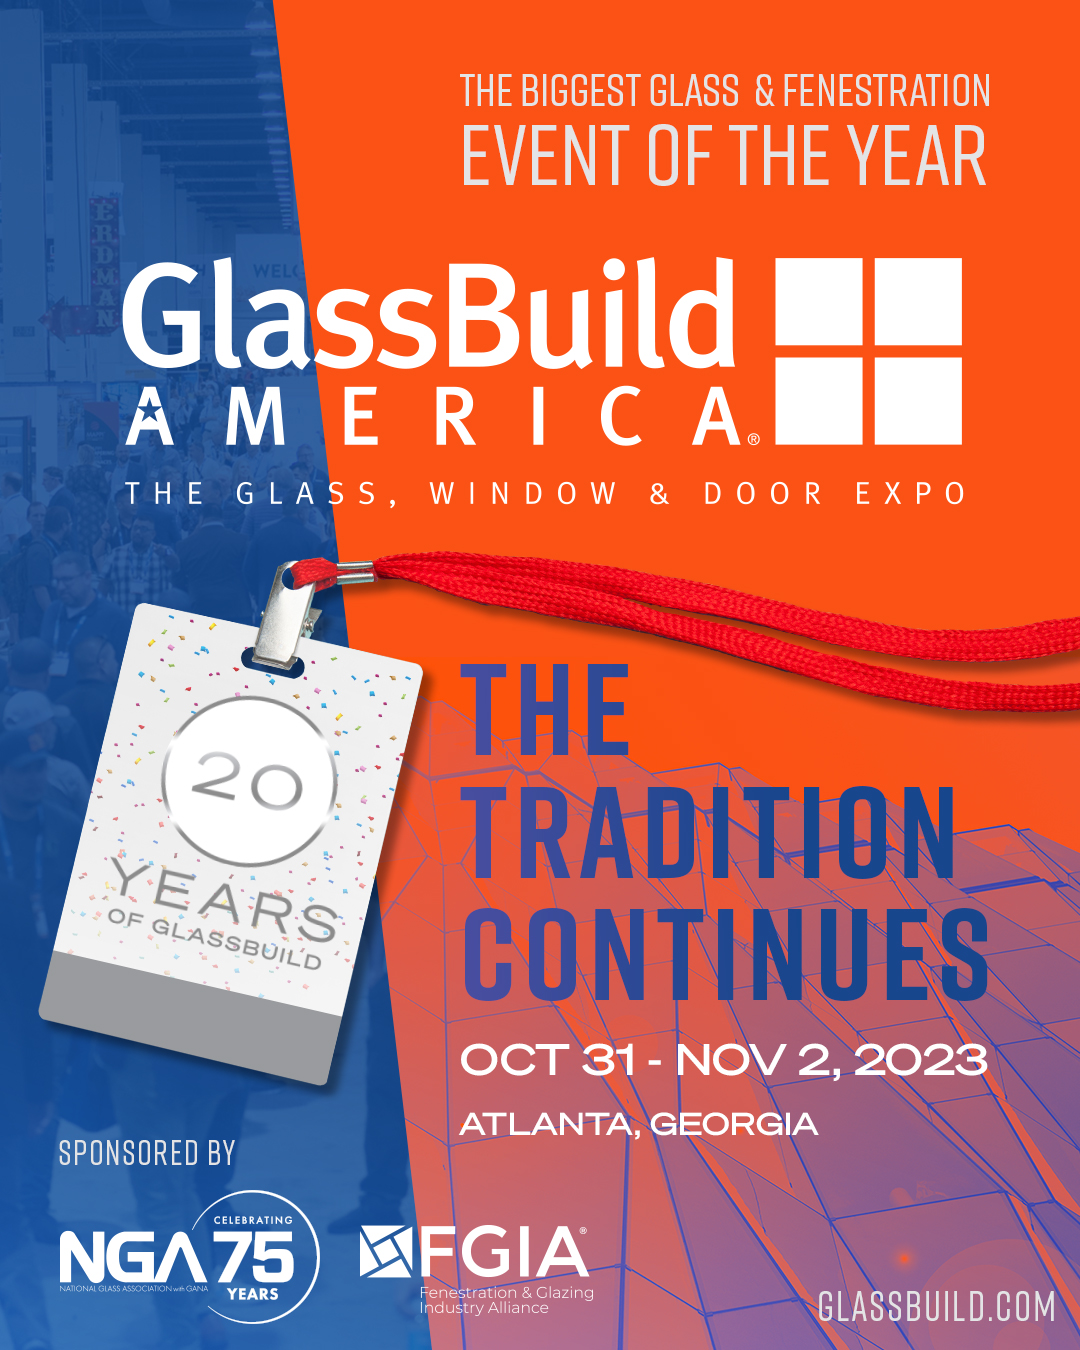 Glass Build Atlanta Invite